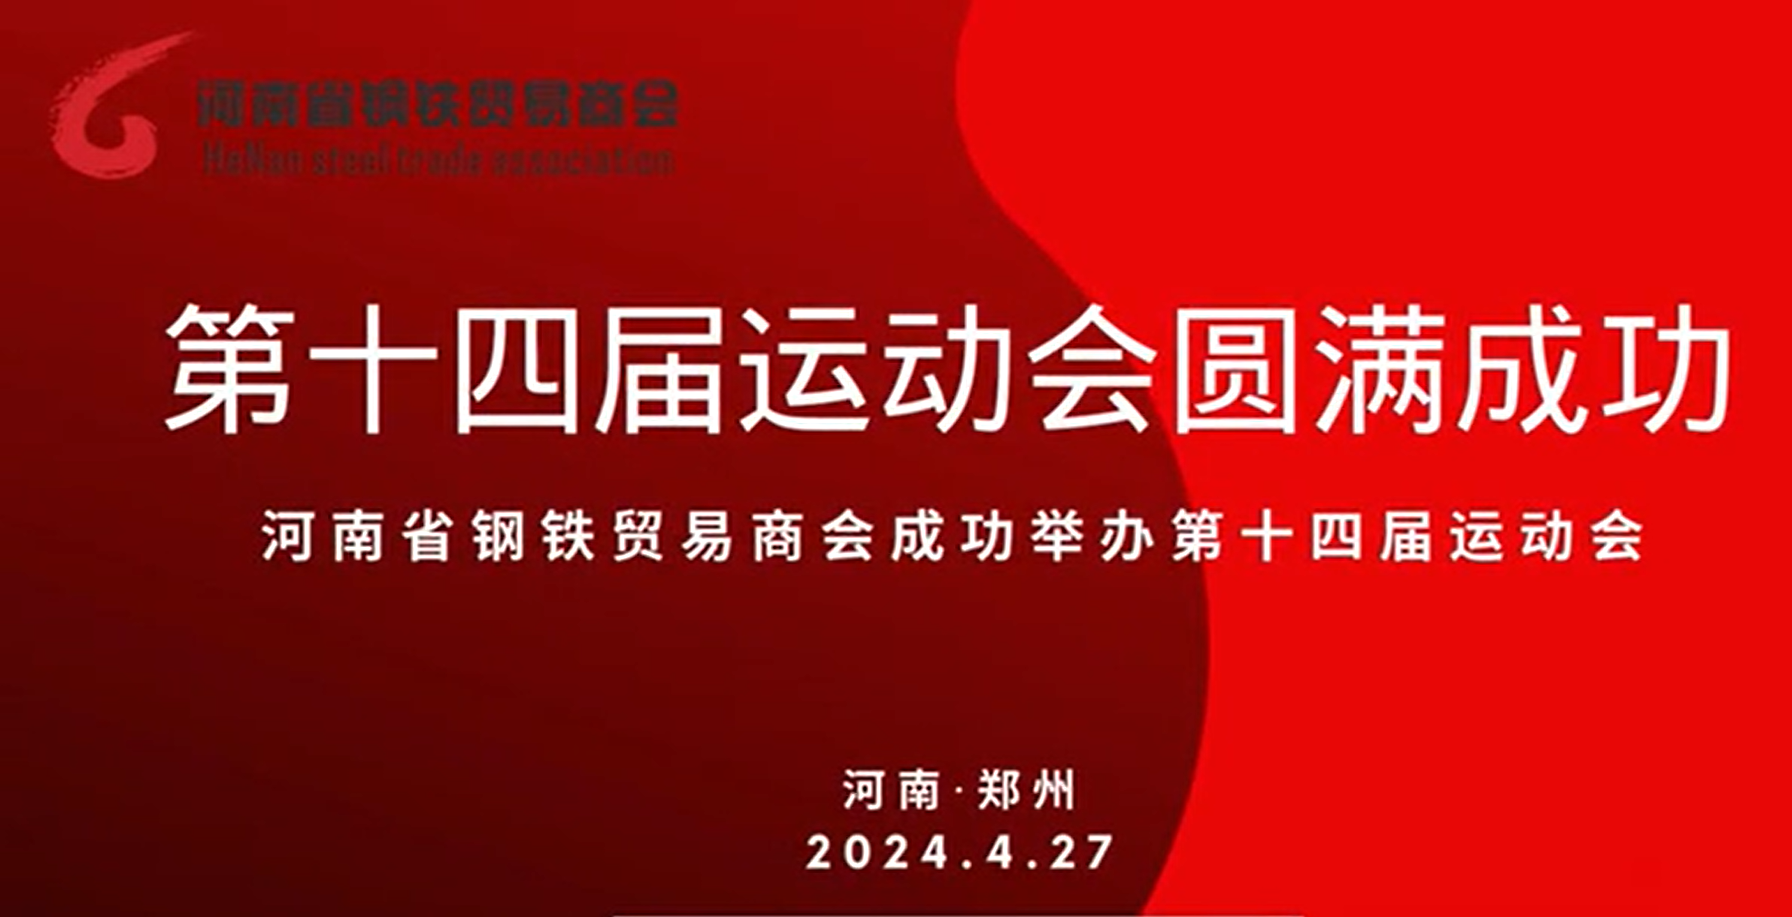 河南省钢铁贸易商会第十四届运动会圆满结束